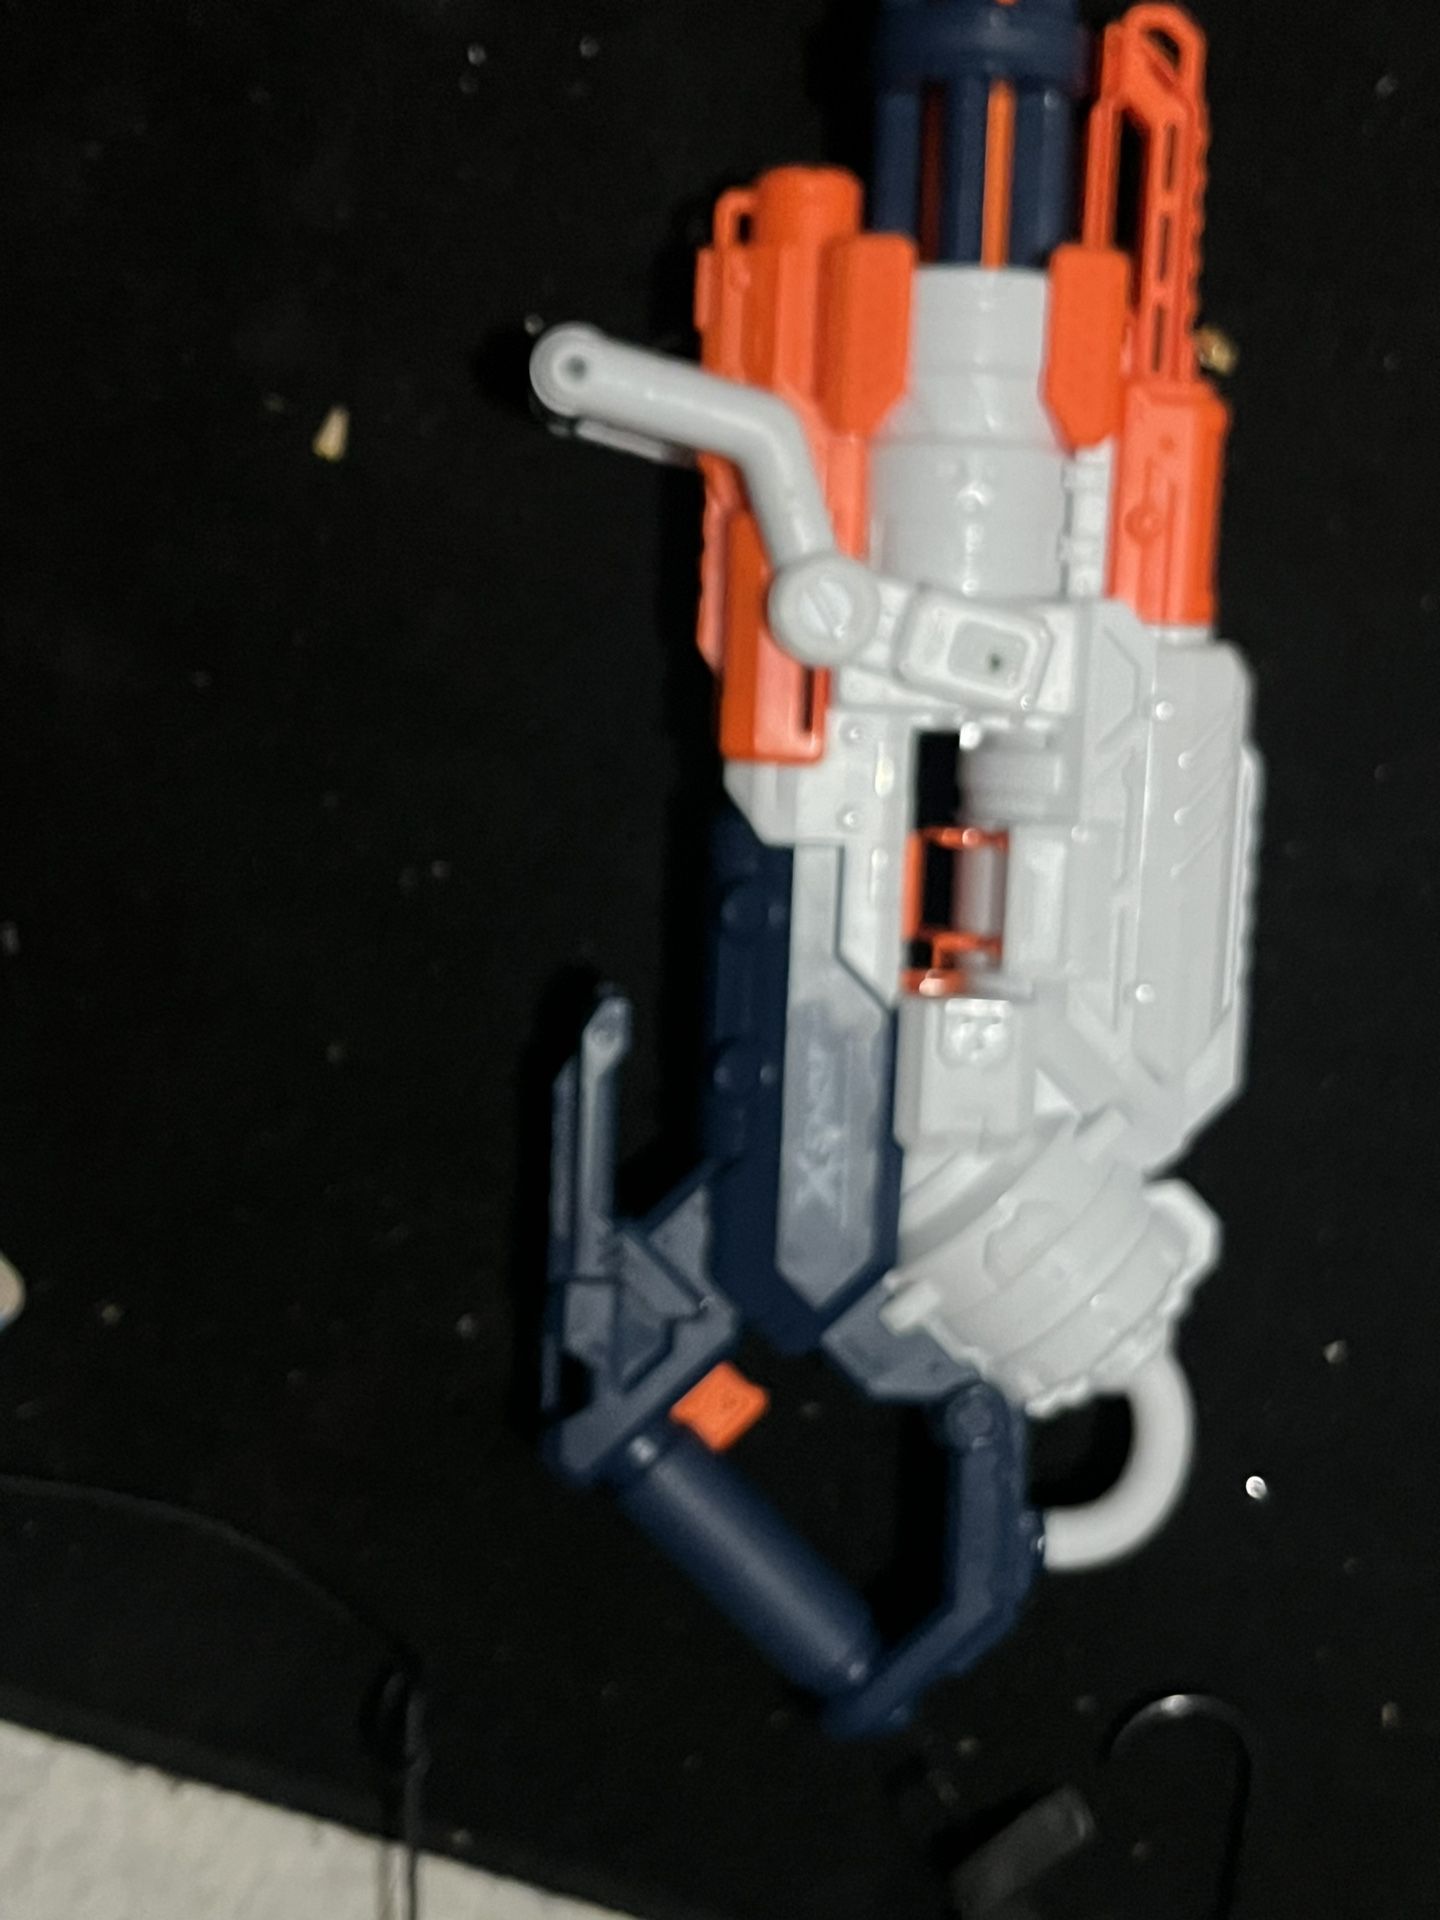 Nerf Mini Gun